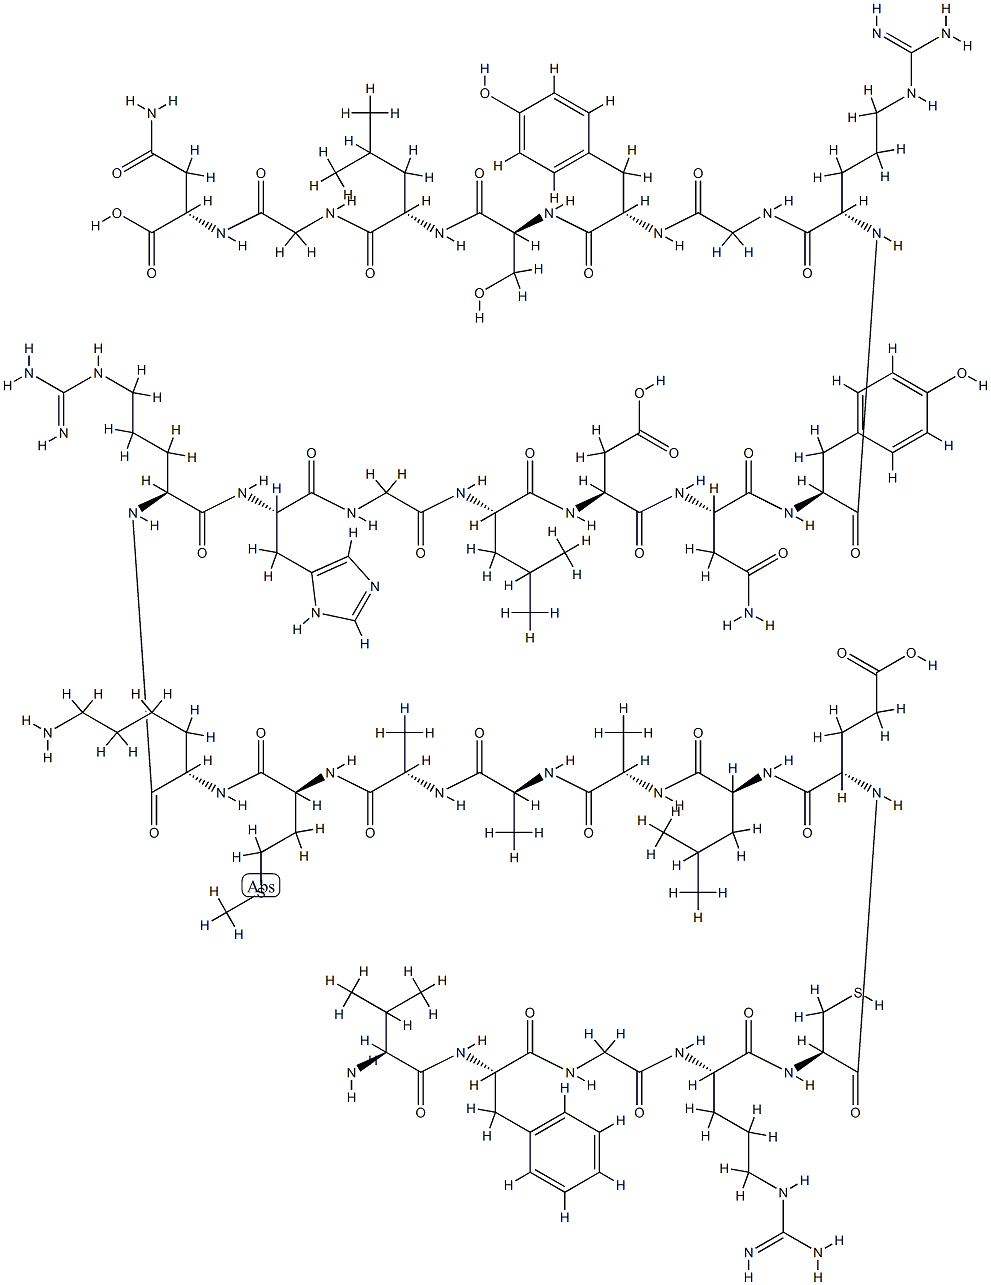 12650-88-3 LysozymePropertiesBactericidal activityApplications